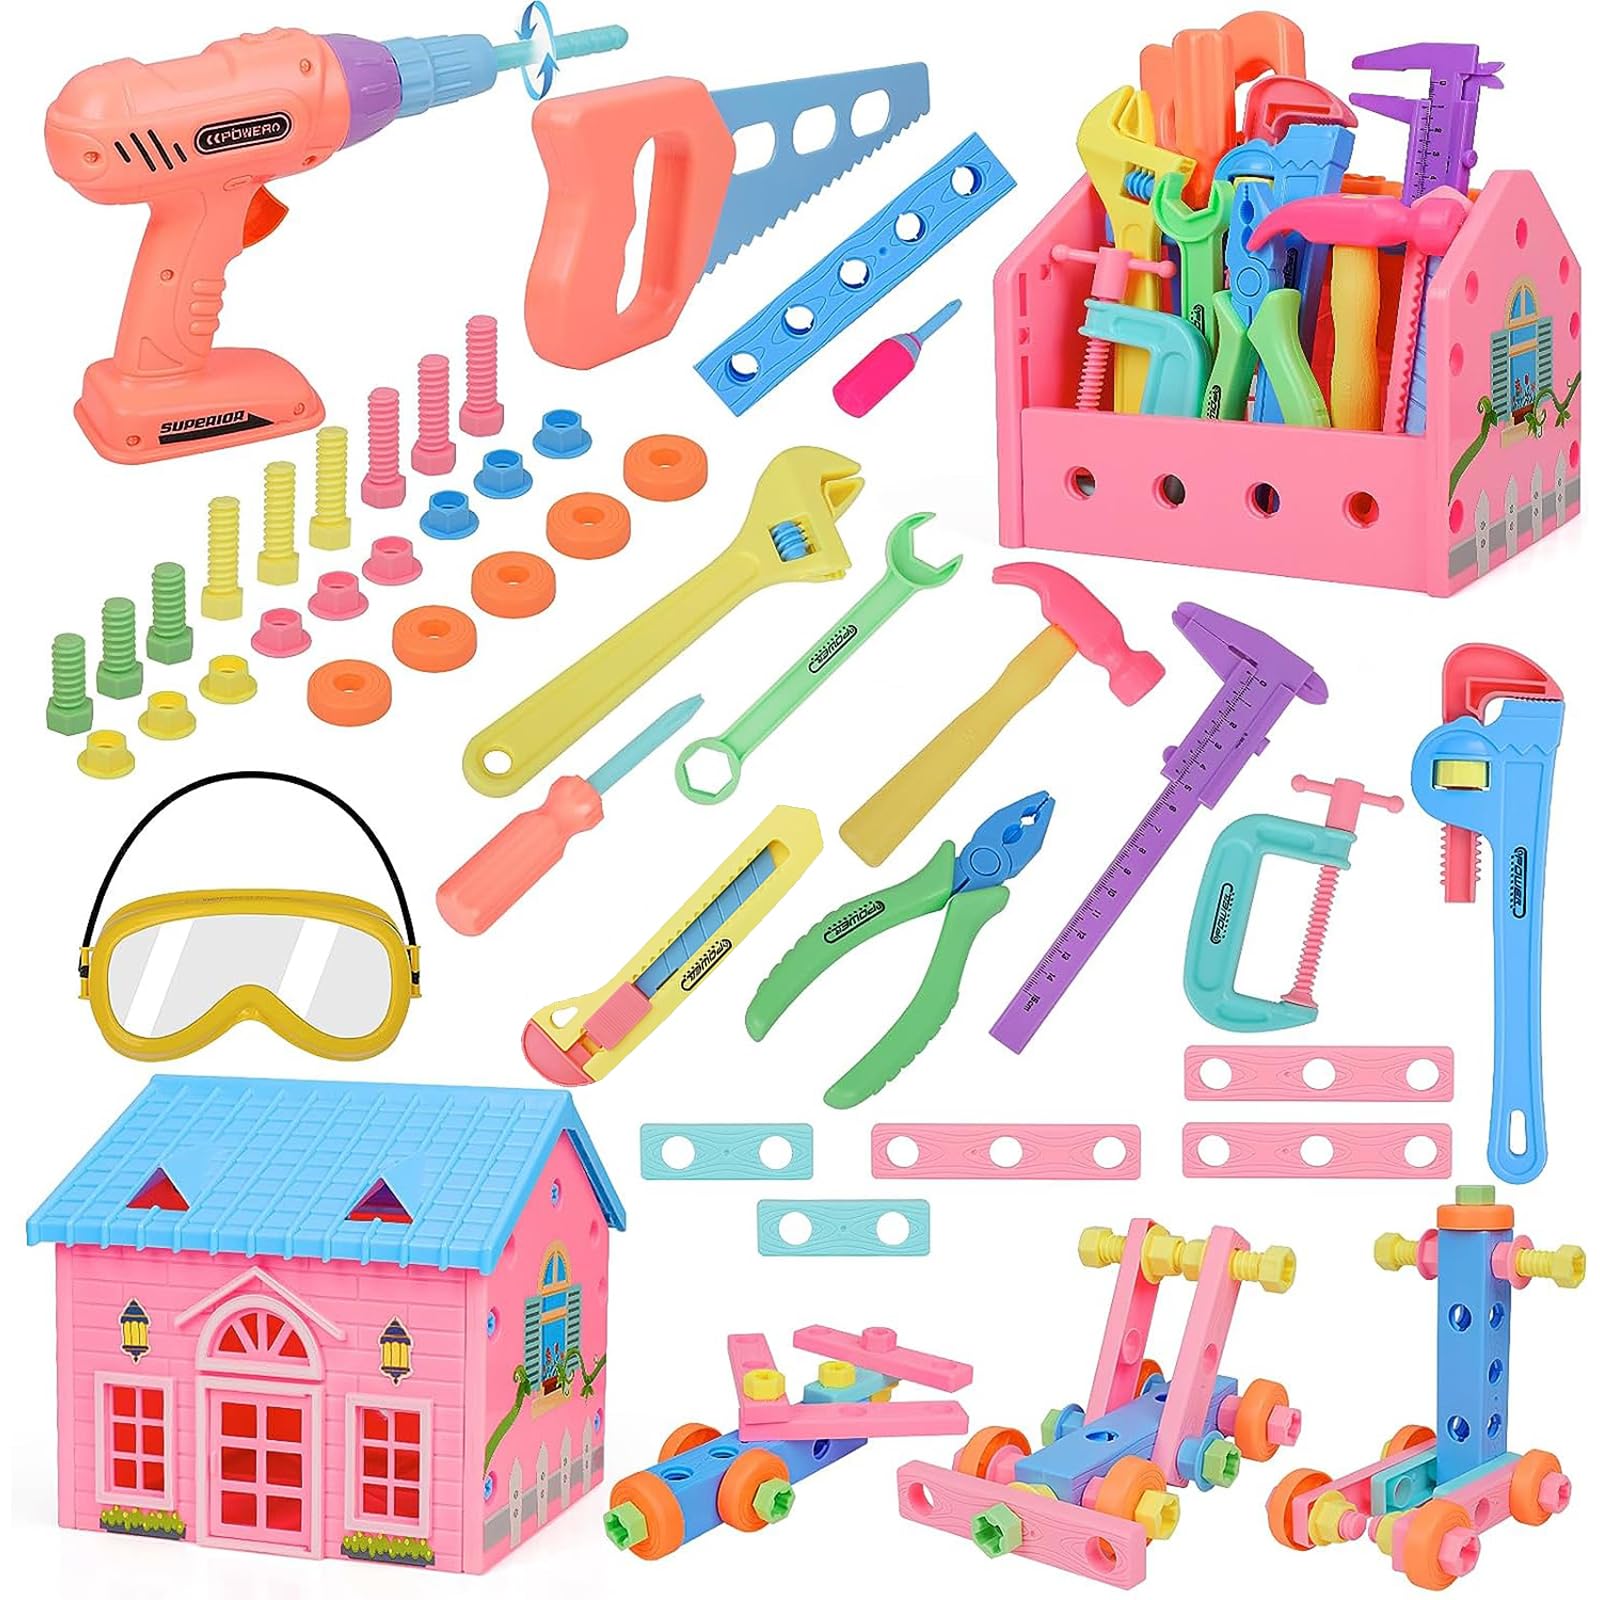 AMYCOOL 組み立て おもちゃ 大工さんごっこ 男の子 女の子 ツールセット 建物 ツールボックス カラフル プレゼント ランキング 知育玩具 教材 誕生日 プレゼント 贈り物 クリスマス 入園祝い (ピンク)